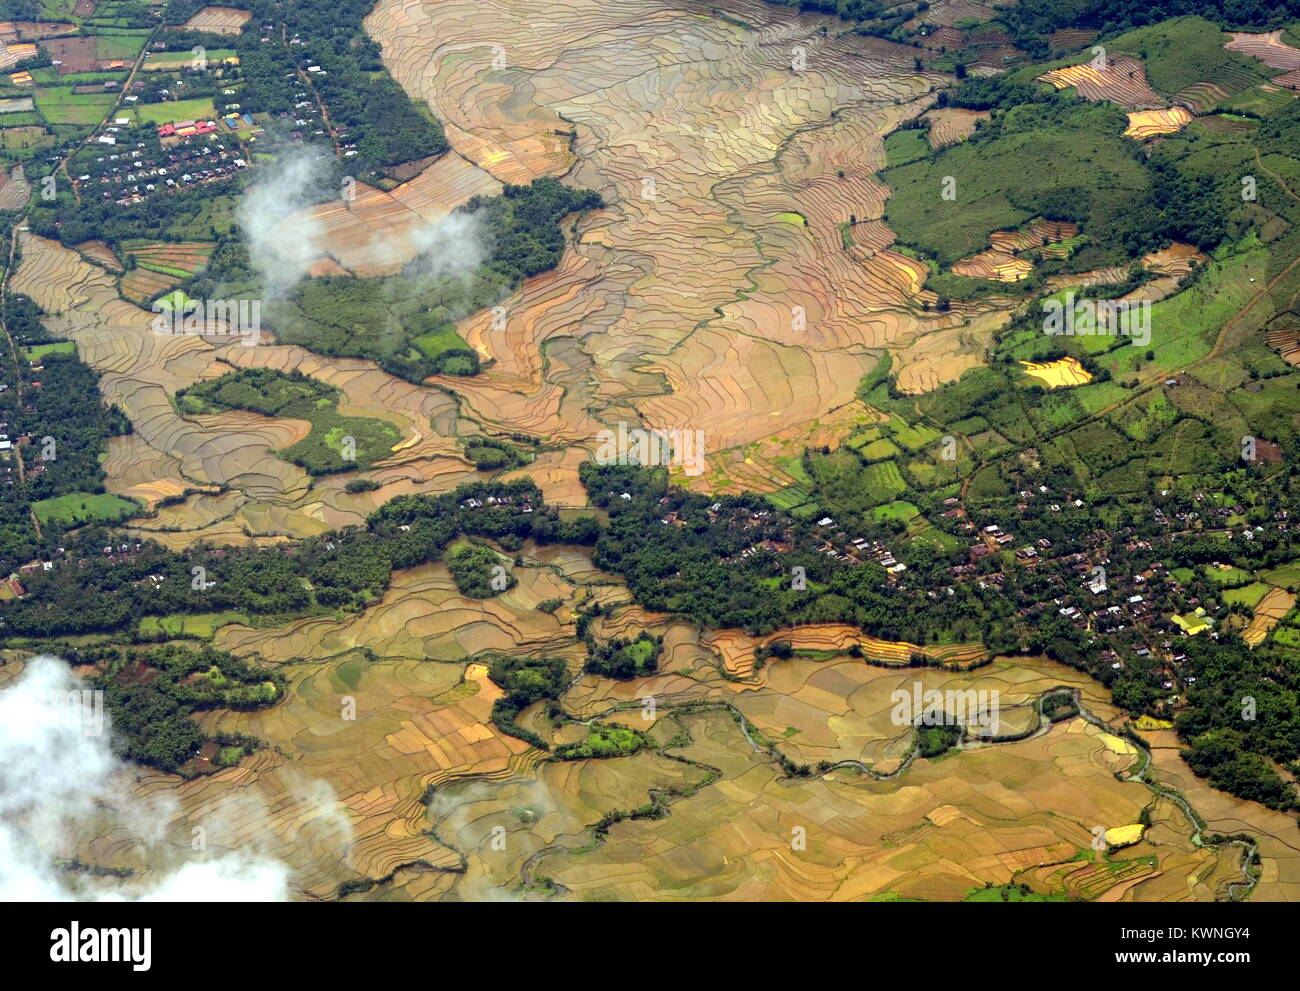 Los campos de arroz inundados con 'ricos en nutrientes y agua marrón barro' durante la temporada de lluvias en la regencia de Pangkep (Pangkajene Kepulauan) en el sur de Sulawesi. Foto de stock